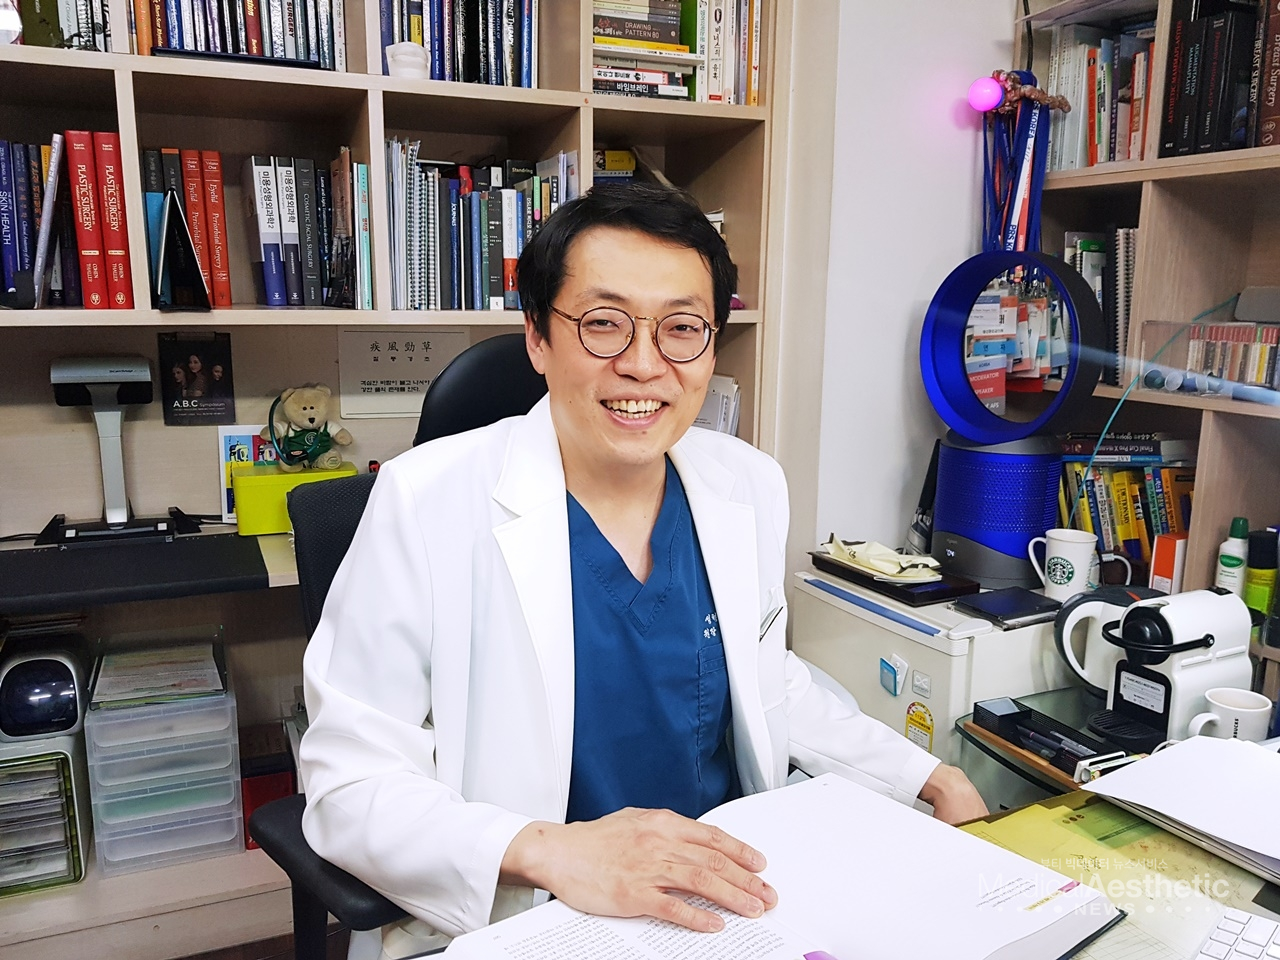 김기태 원장은 성형외과 의사이면서 '레이저 레시피'를 개발하는 재미에 빠져있다.